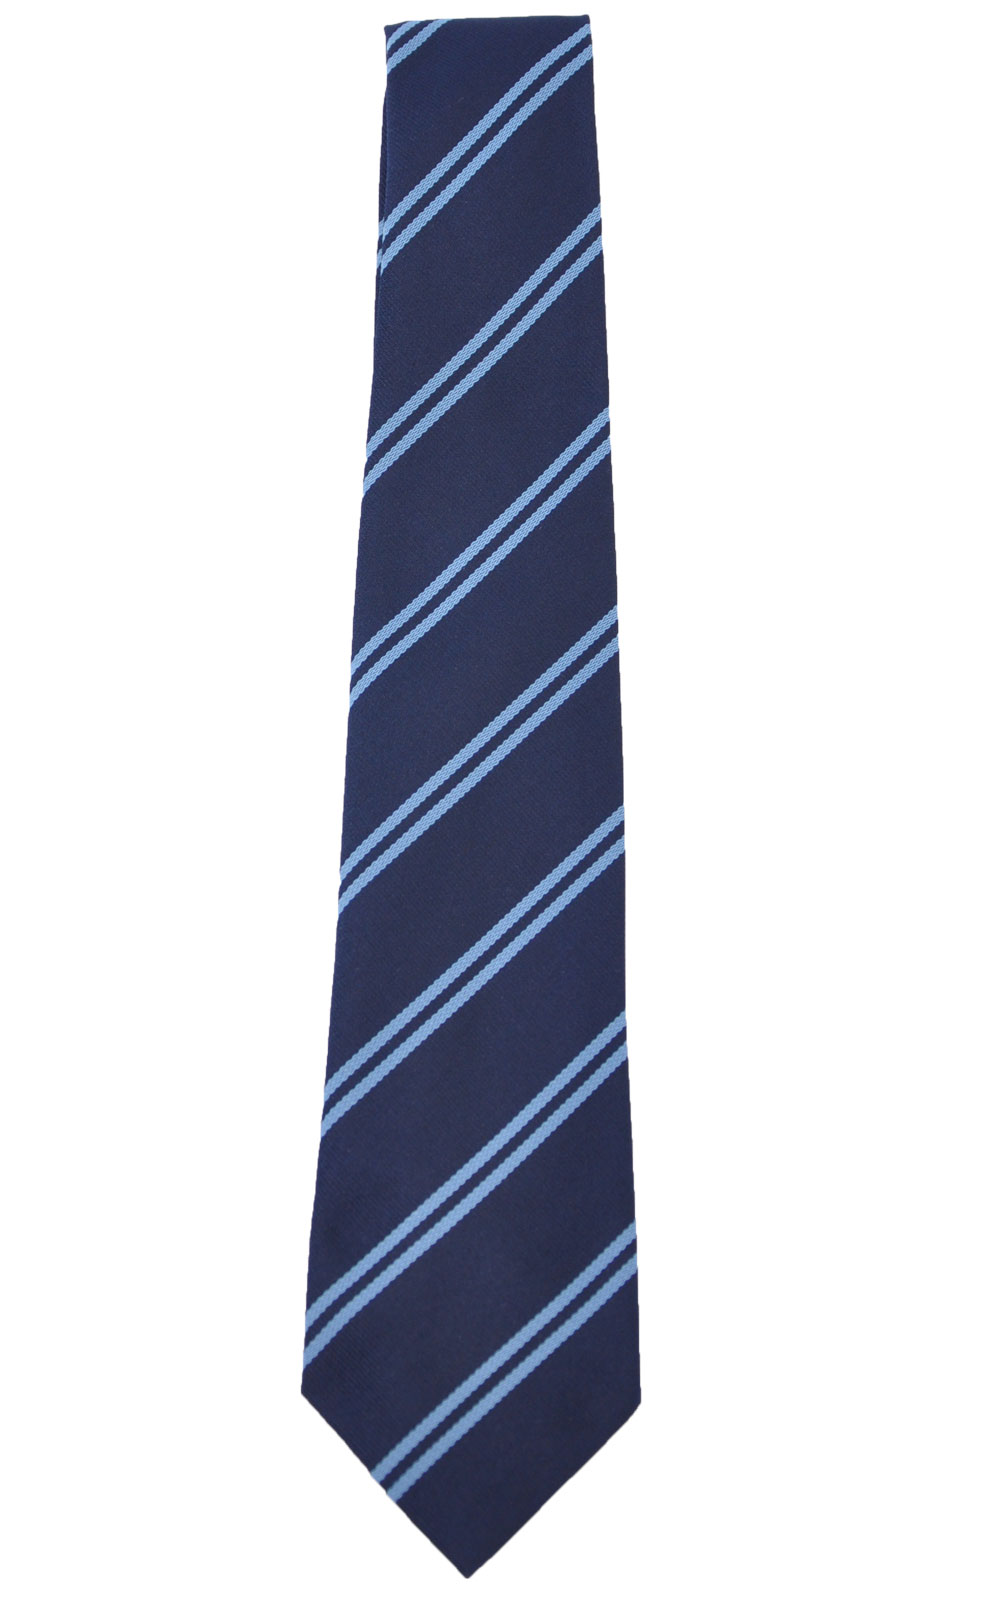 Picture of Ballymoney High School Tie - Unicol